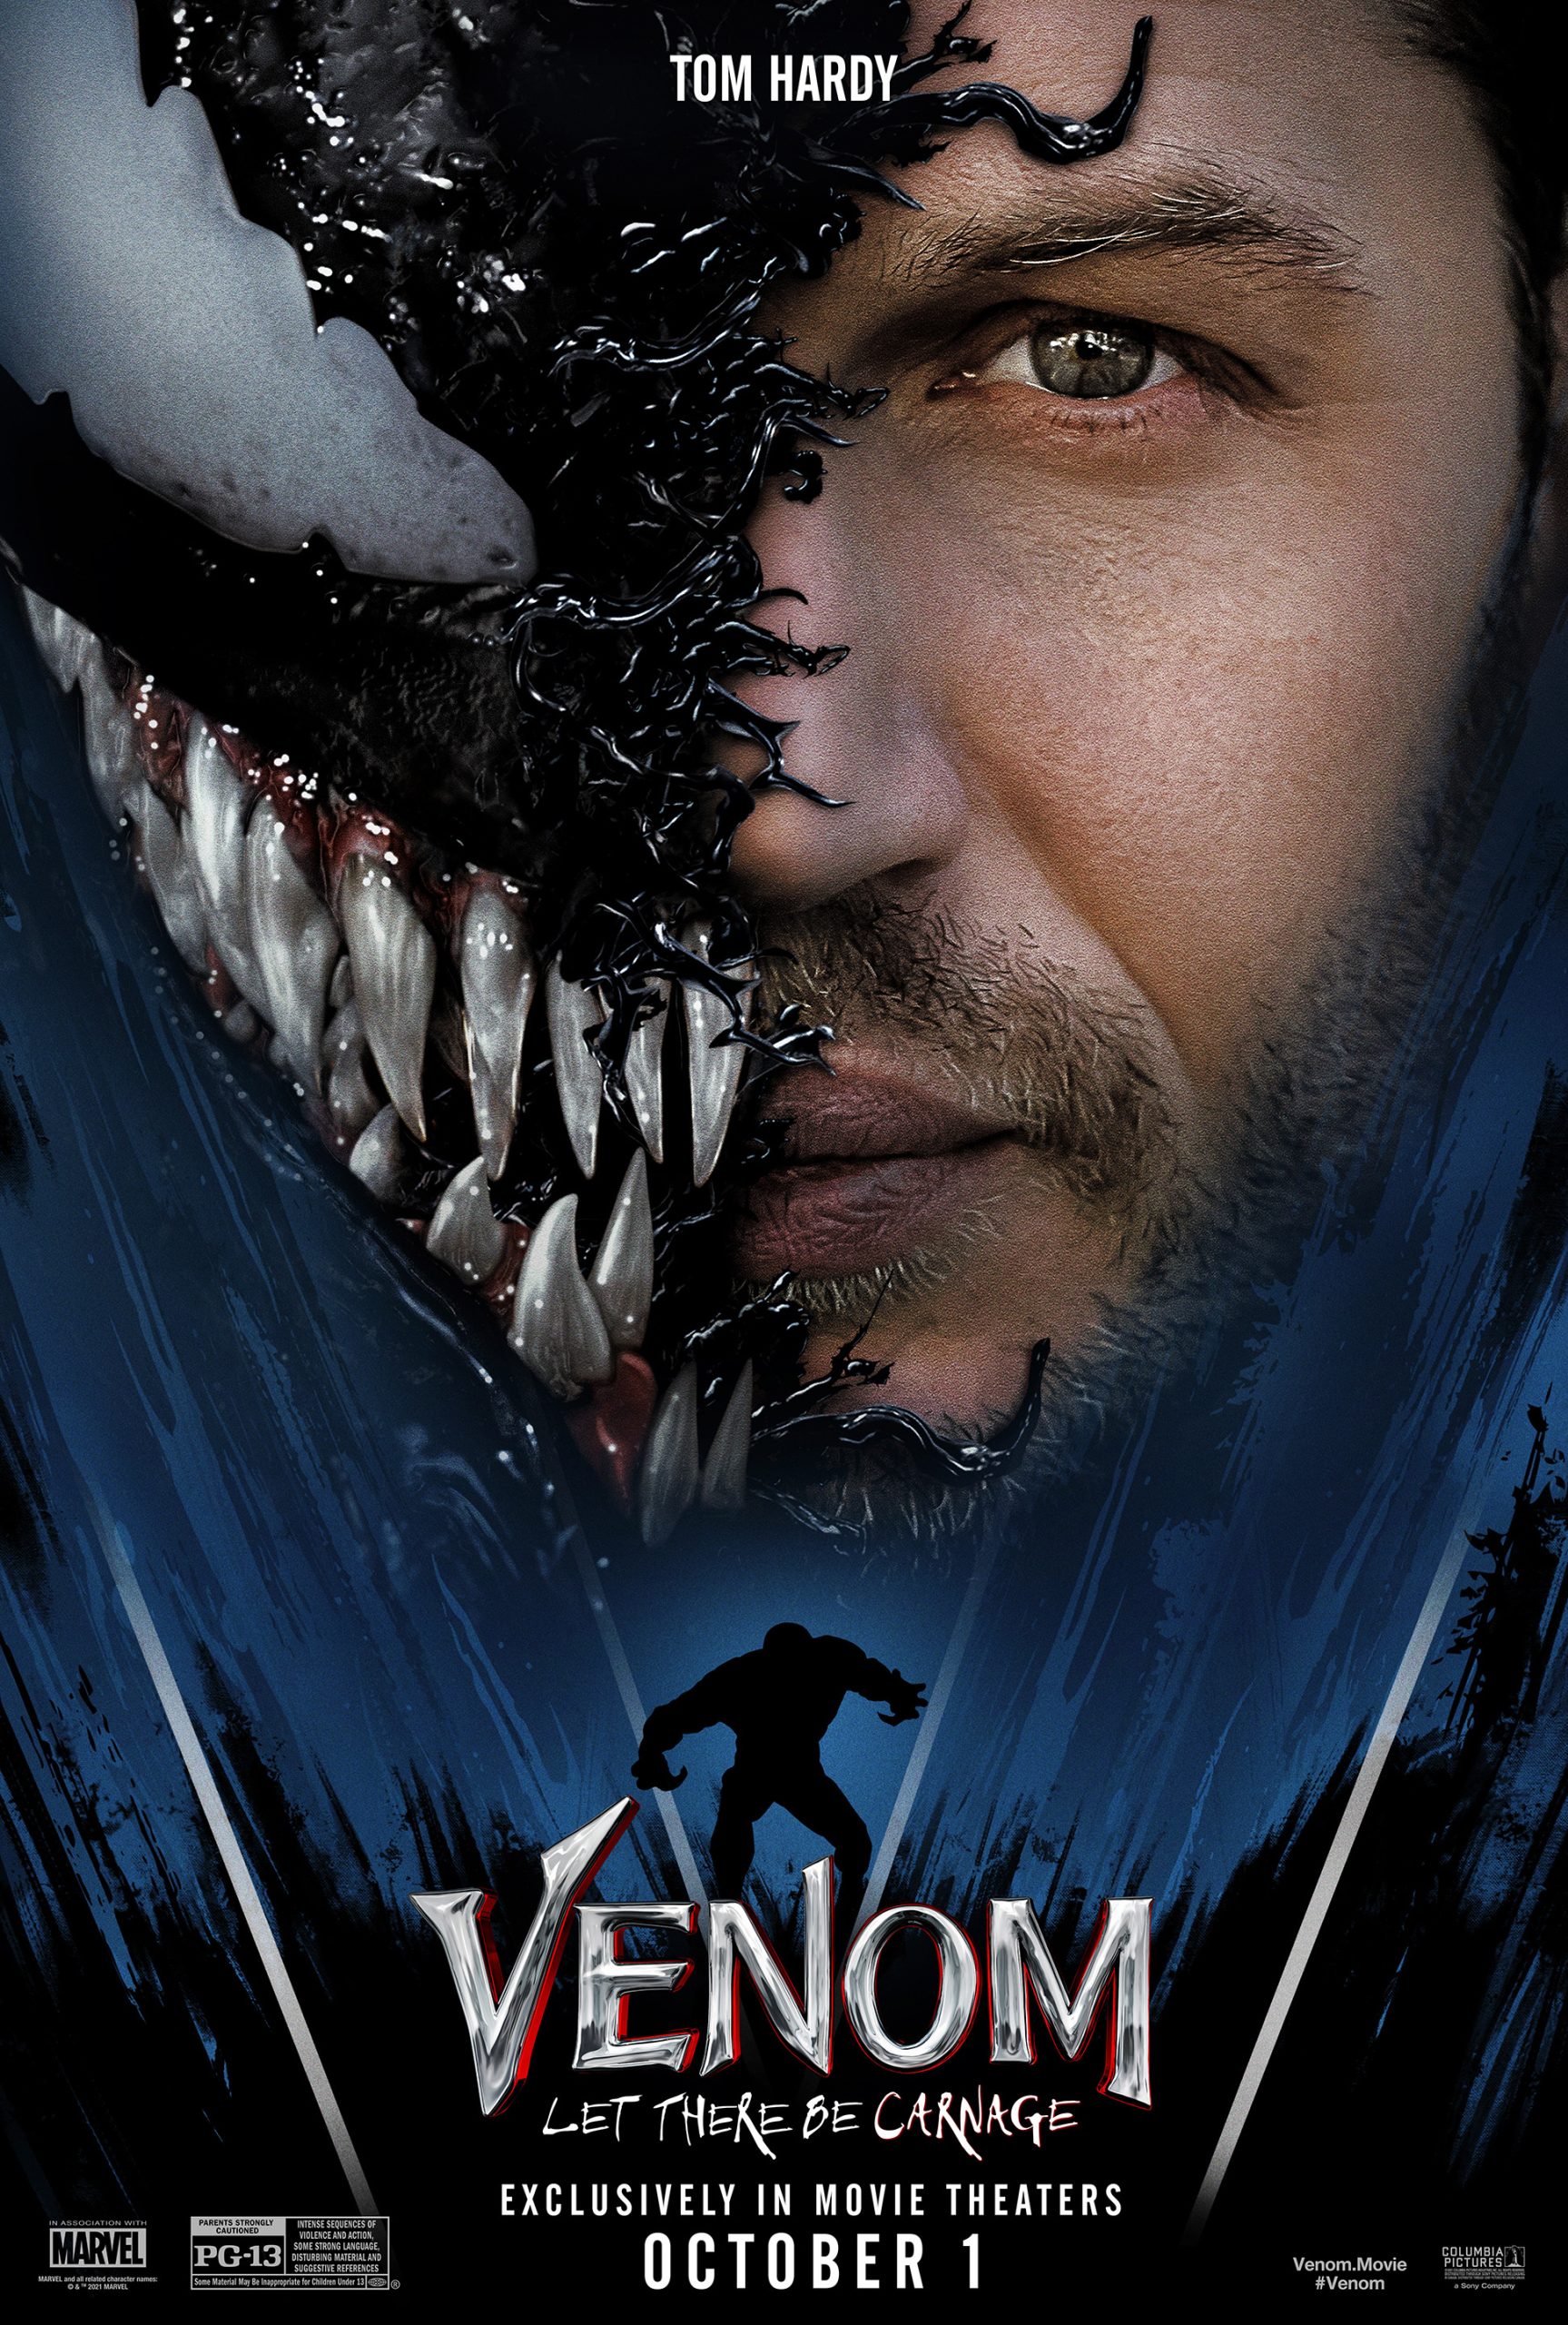 ดูหนังออนไลน์ฟรี Venom 2 Let There Be Carnage (2021) เวน่อม 2 หนังเต็มเรื่อง หนังมาสเตอร์ ดูหนังHD ดูหนังออนไลน์ ดูหนังใหม่